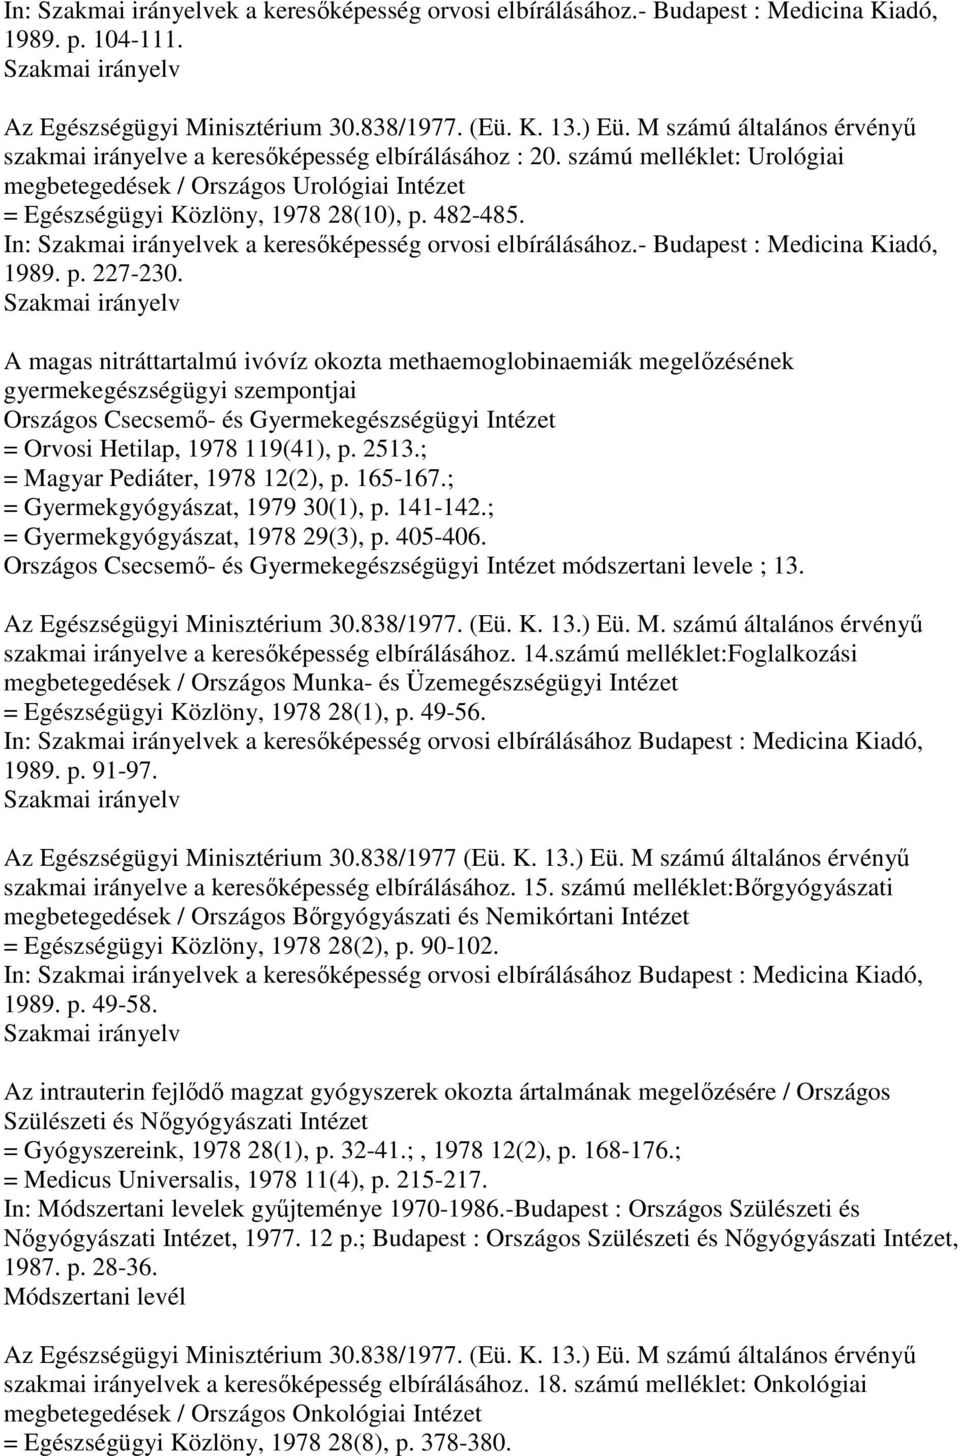 In: Szakmai irányelvek a keresıképesség orvosi elbírálásához.- Budapest : Medicina Kiadó, 1989. p. 227-230.